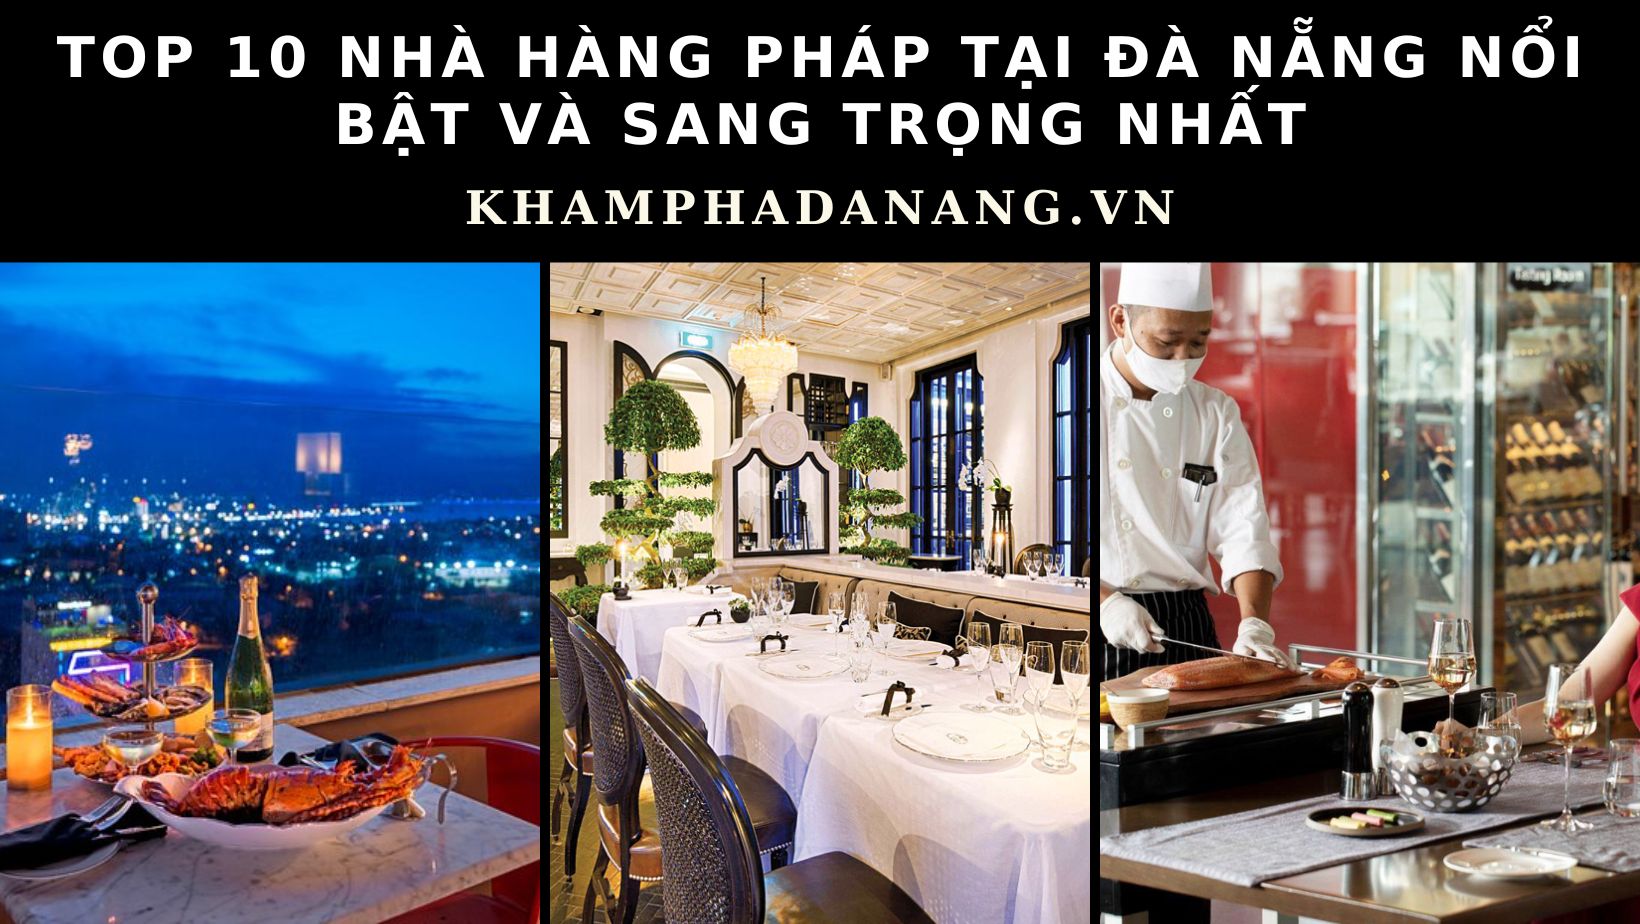 Top 10 quán phở Hà Nội tại Đà Nẵng ngon và chất lượng nhất